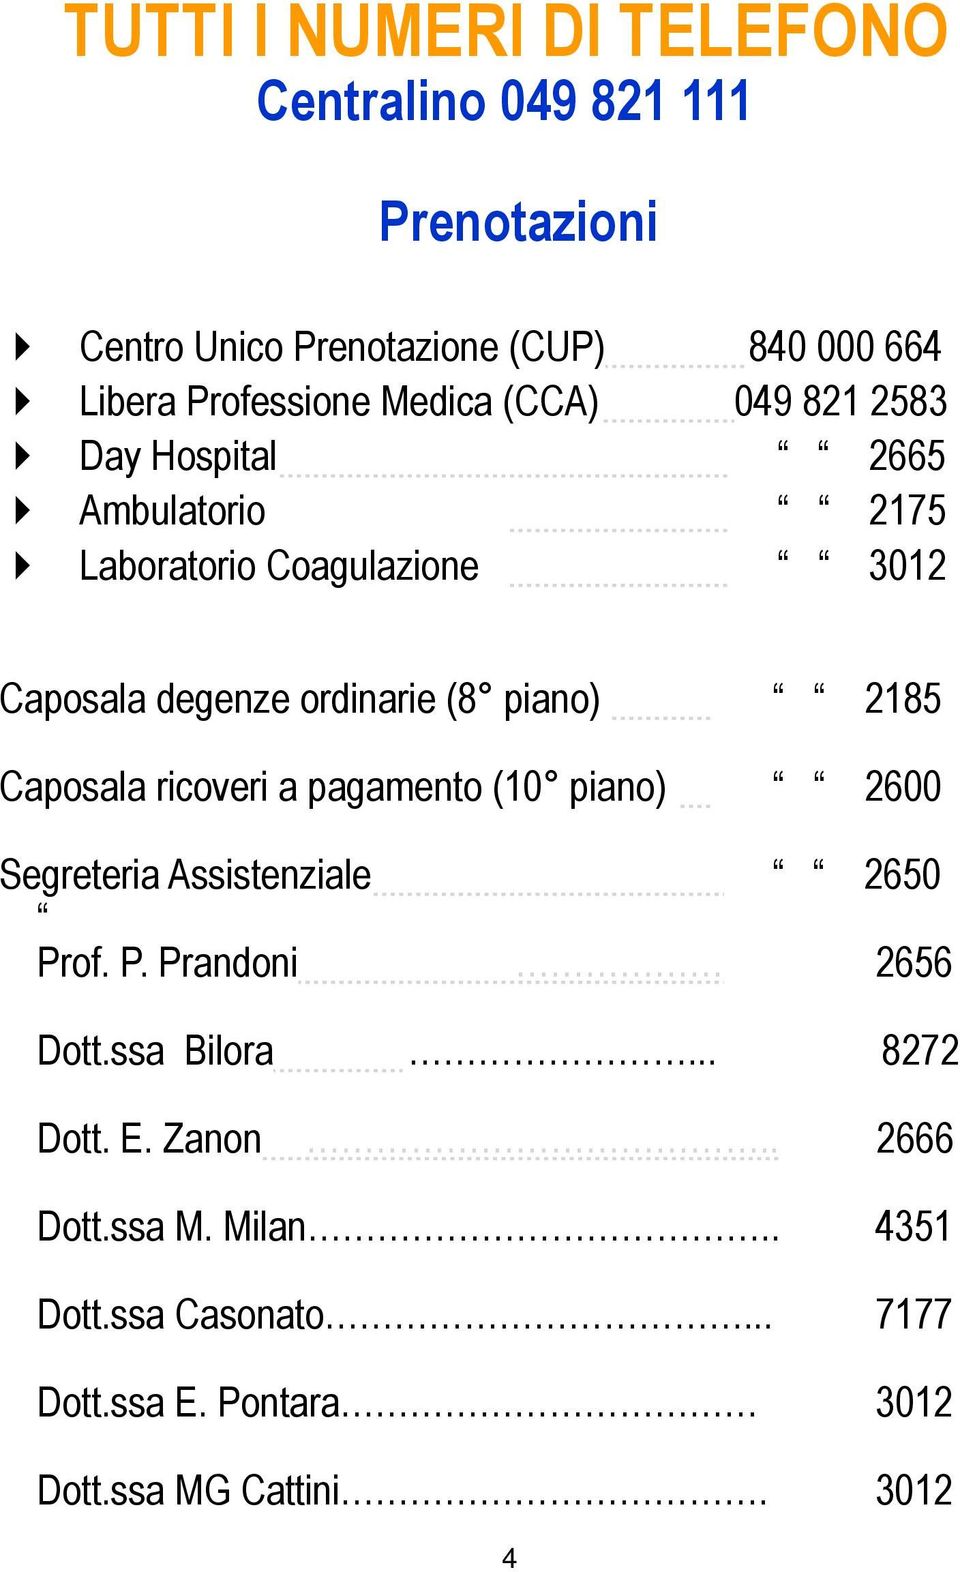 piano) 2185 Caposala ricoveri a pagamento (10 piano) 2600 Segreteria Assistenziale 2650 Prof. P. Prandoni 2656 Dott.ssa Bilora.